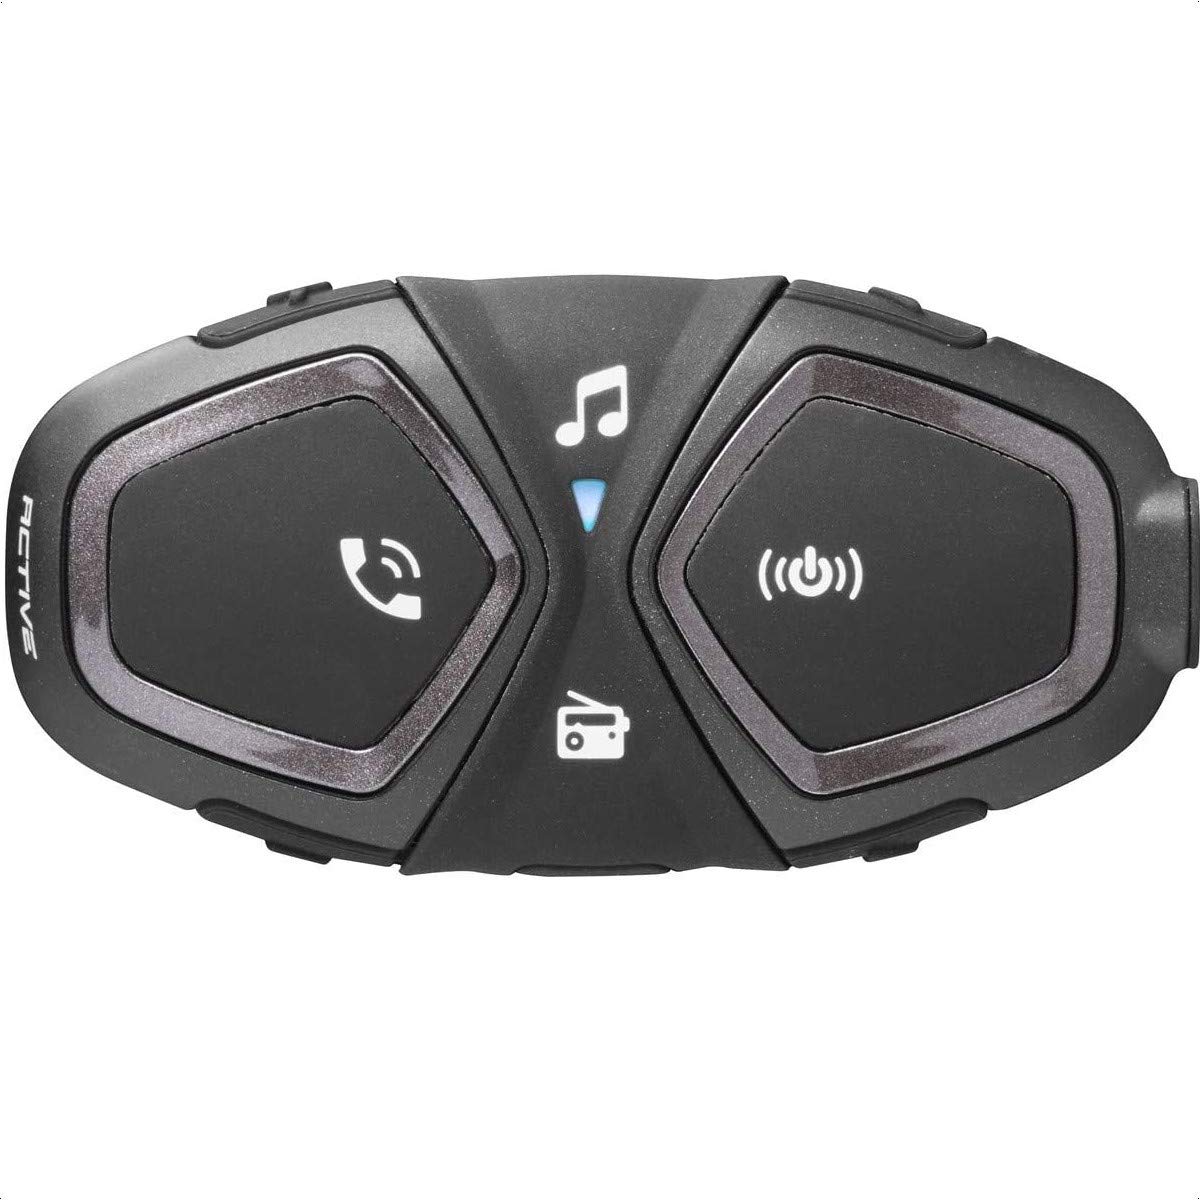 INTERPHONE Active - Einzelpack - Bluetooth-Kommunikationssystem für Motorräder - Bis zu 4 Reiters, 1Km Reichweite - 15 Std Sprechzeit - Radio Fm - GPS - MP3 - Waterproof IP67 von Interphone